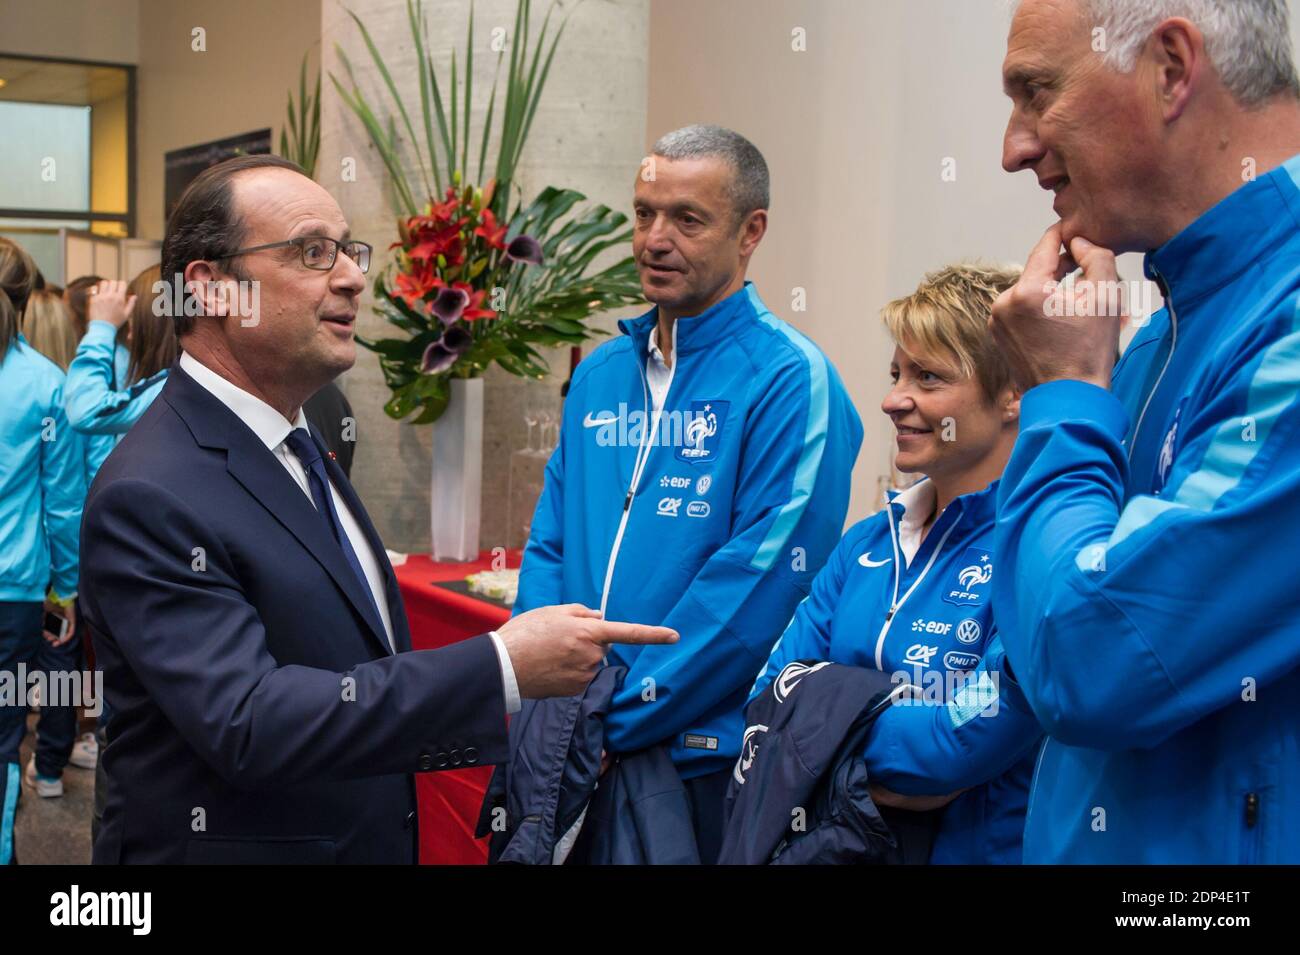 Il presidente francese Francois Hollande ha partecipato ad una conferenza stampa per presentare i membri del '11 Tricolores', un comitato per promuovere l'offerta UEFA euro 2016 in Francia, presso l'auditorium dello Stade de France a Saint-Denis, vicino a Parigi, Francia, il 30 maggio 2015. Foto di Pool/ABACAPRESS.COM Foto Stock